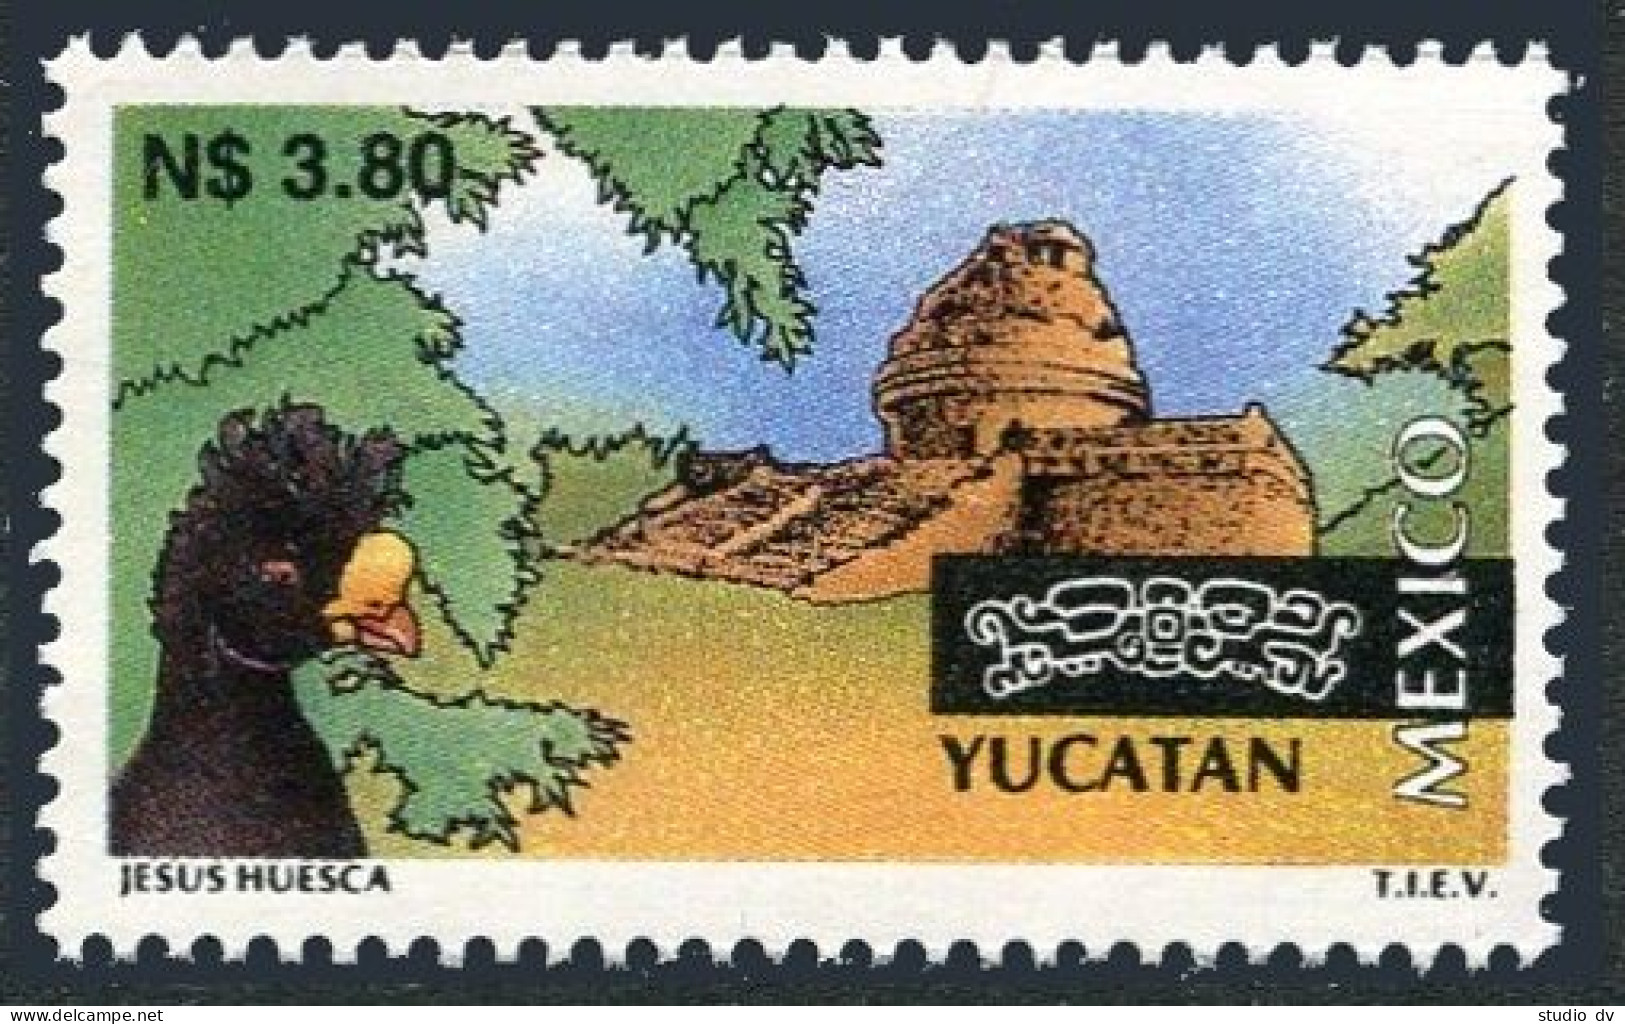 Mexico 1801, MNH. Michel 2496. Tourism 1995. Yucatan. Pyramid, Bird. - Mexique